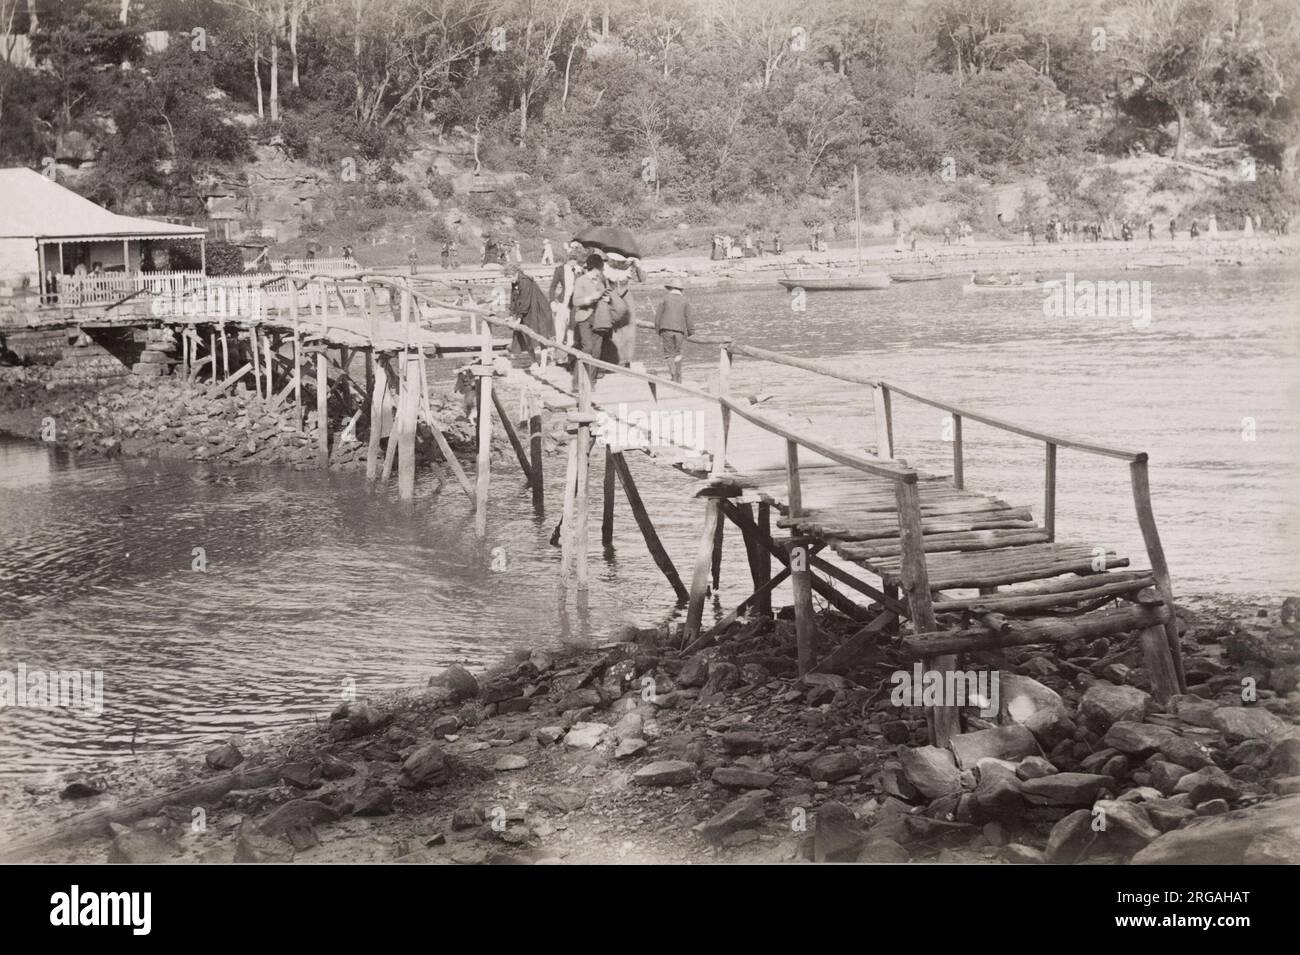 um 1900 Vintage-Foto: Australien - Sydney arrea. Mit Untertitel Mussmans' Bay, vermutlich Mosman Bay, Leute, die zur Freizeit laufen. Stockfoto